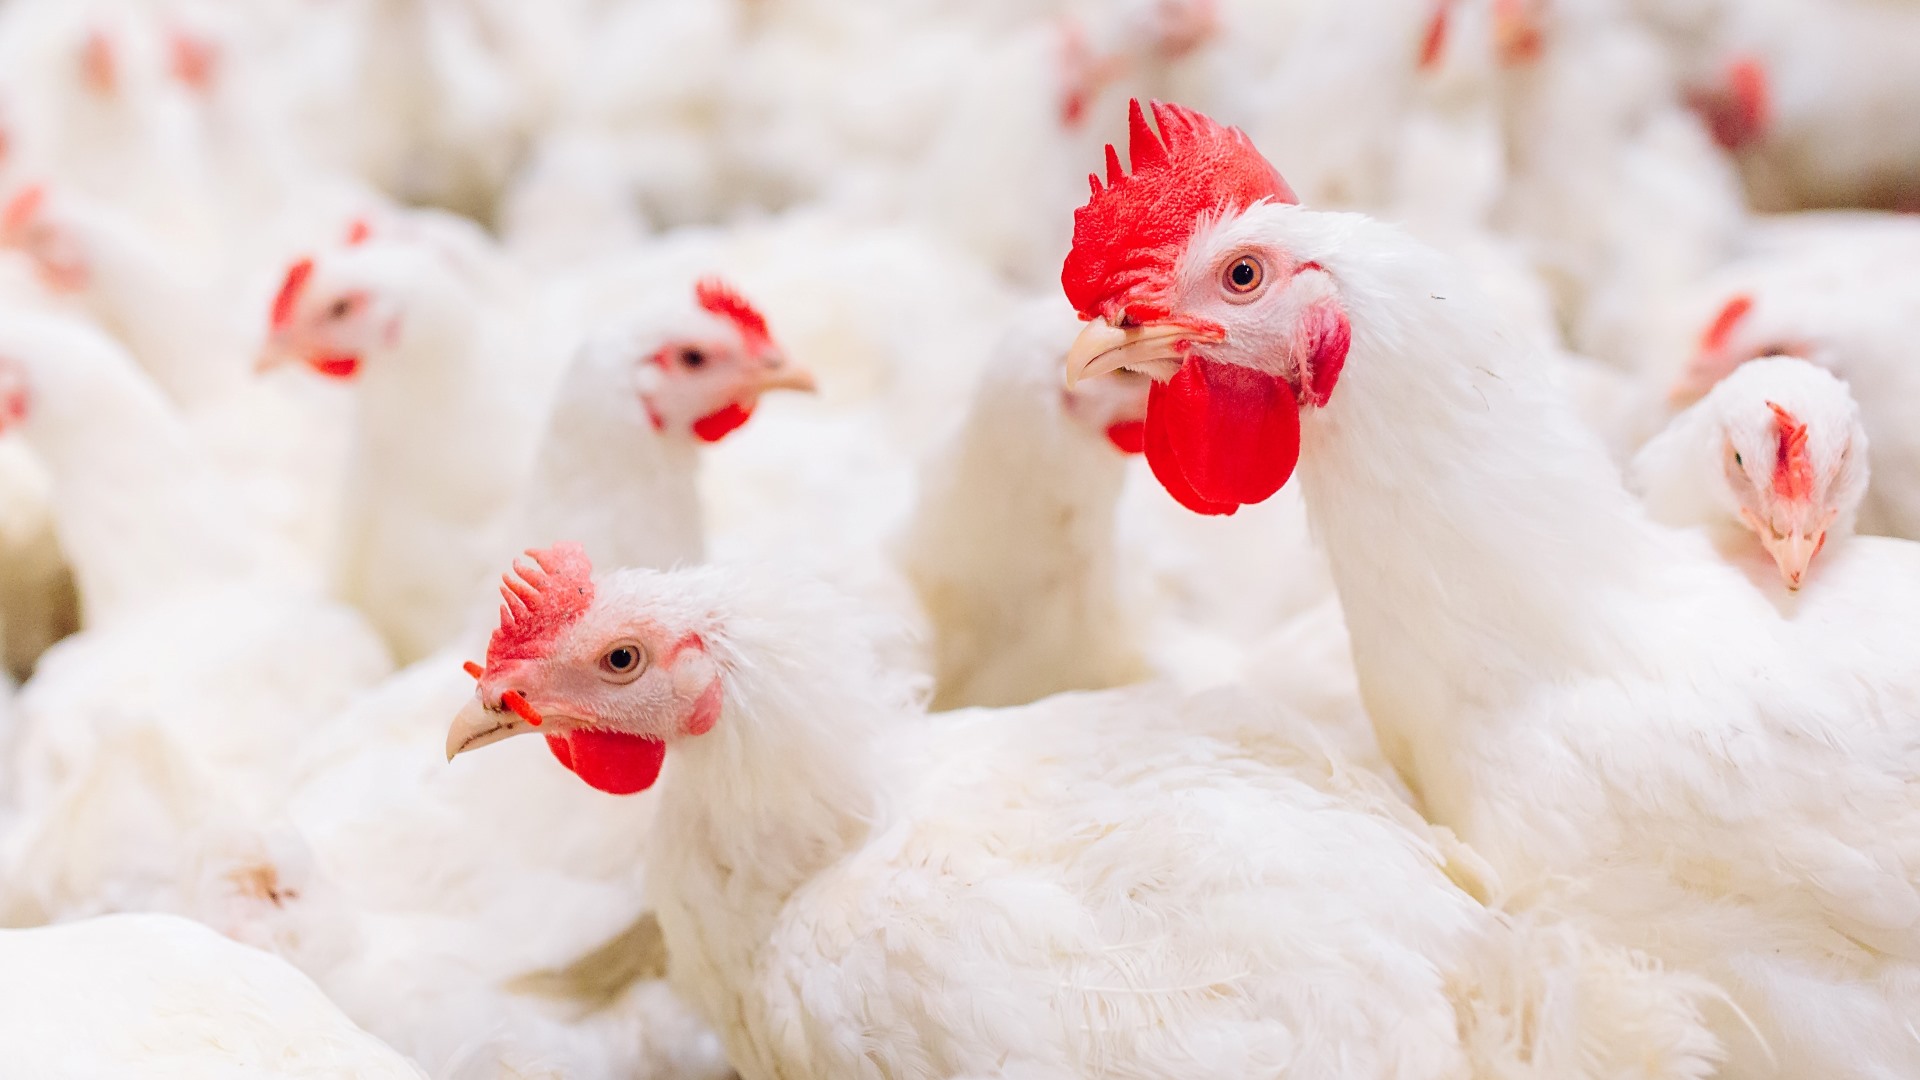 El 100% de los huevos servidos en nuestros restaurantes de Costa Rica provienen de gallinas libres de jaula